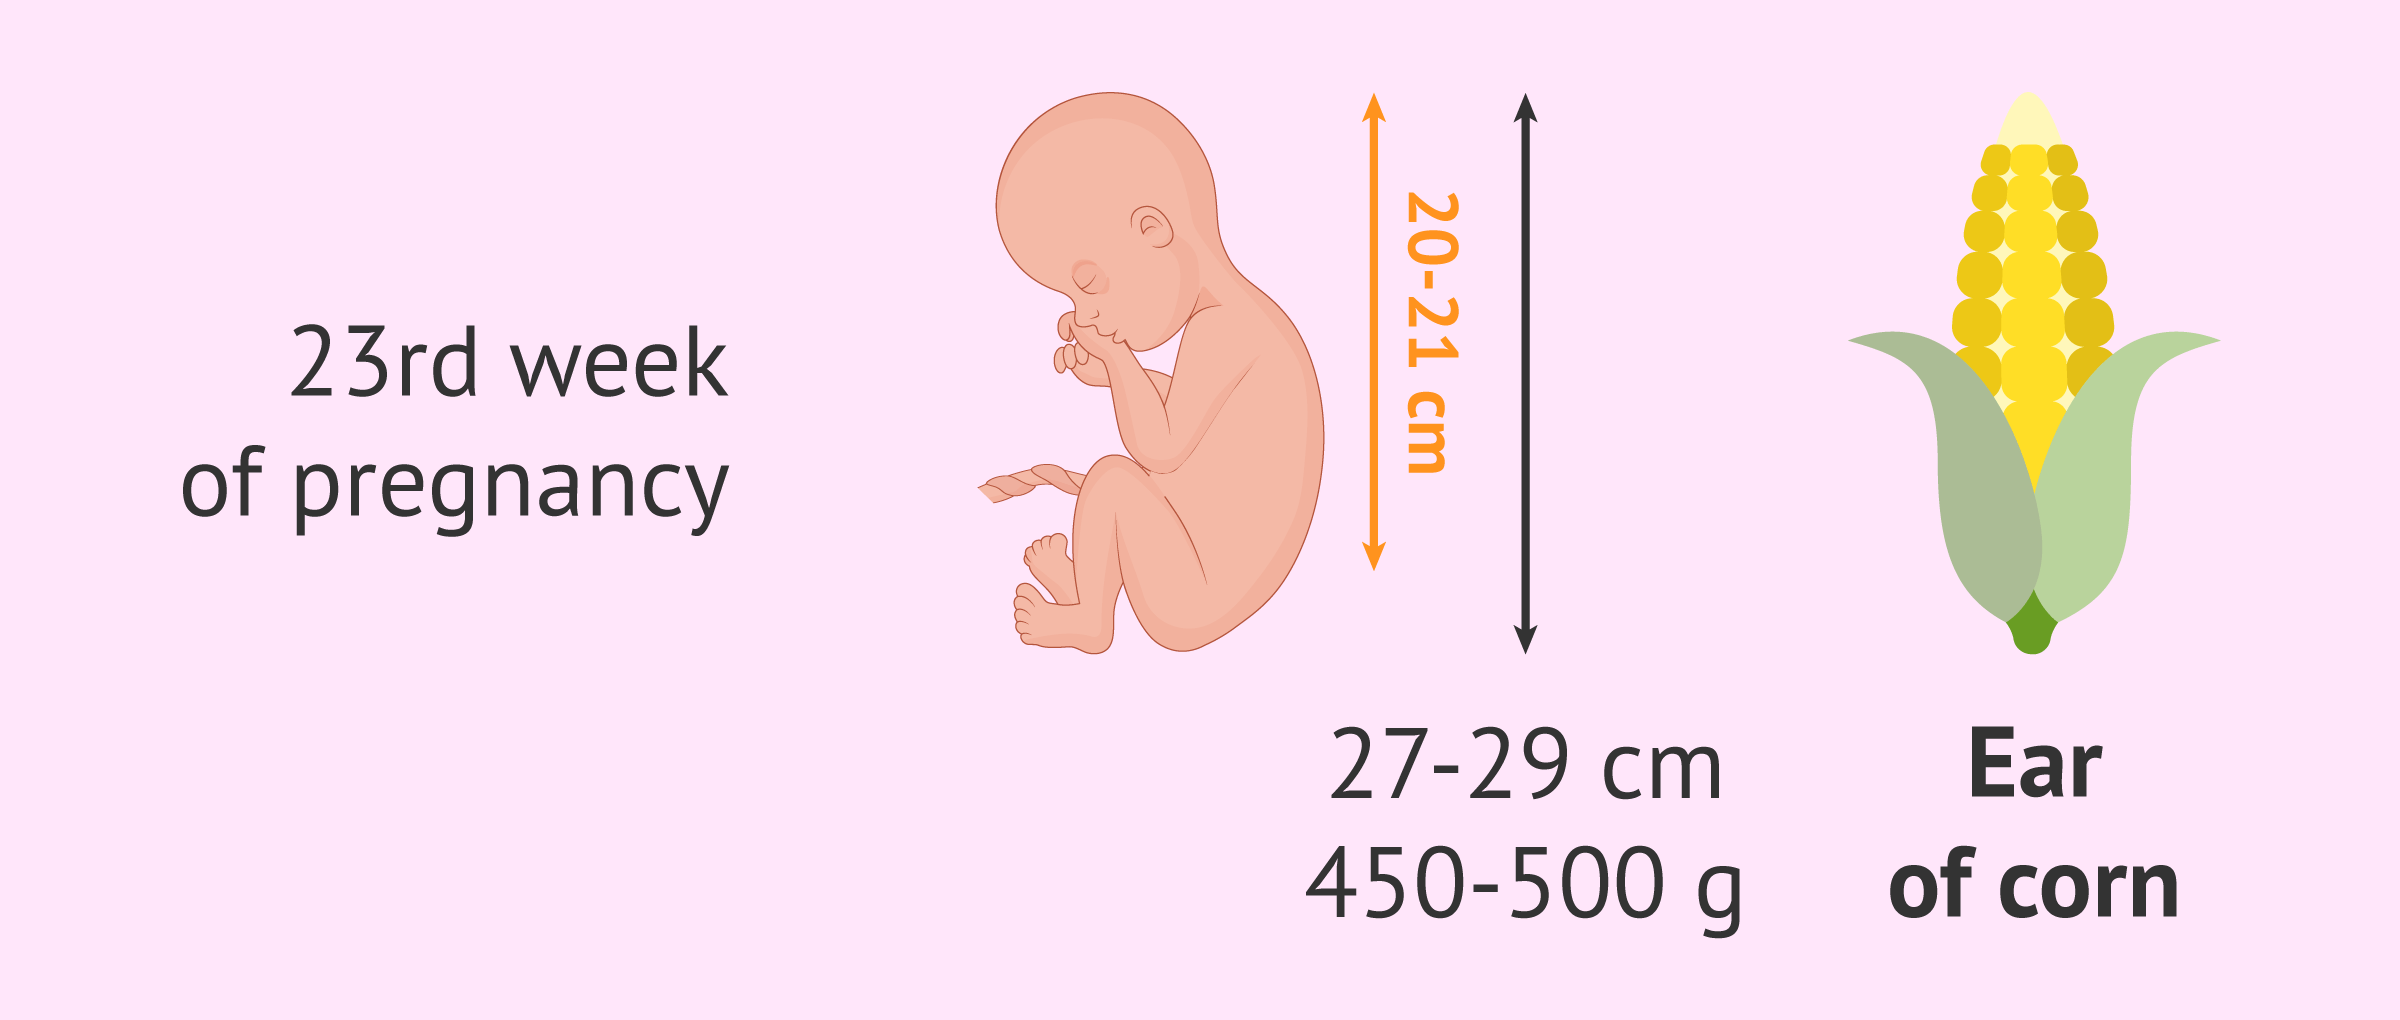 Measurement of the foetus in the 23rd week of pregnancy